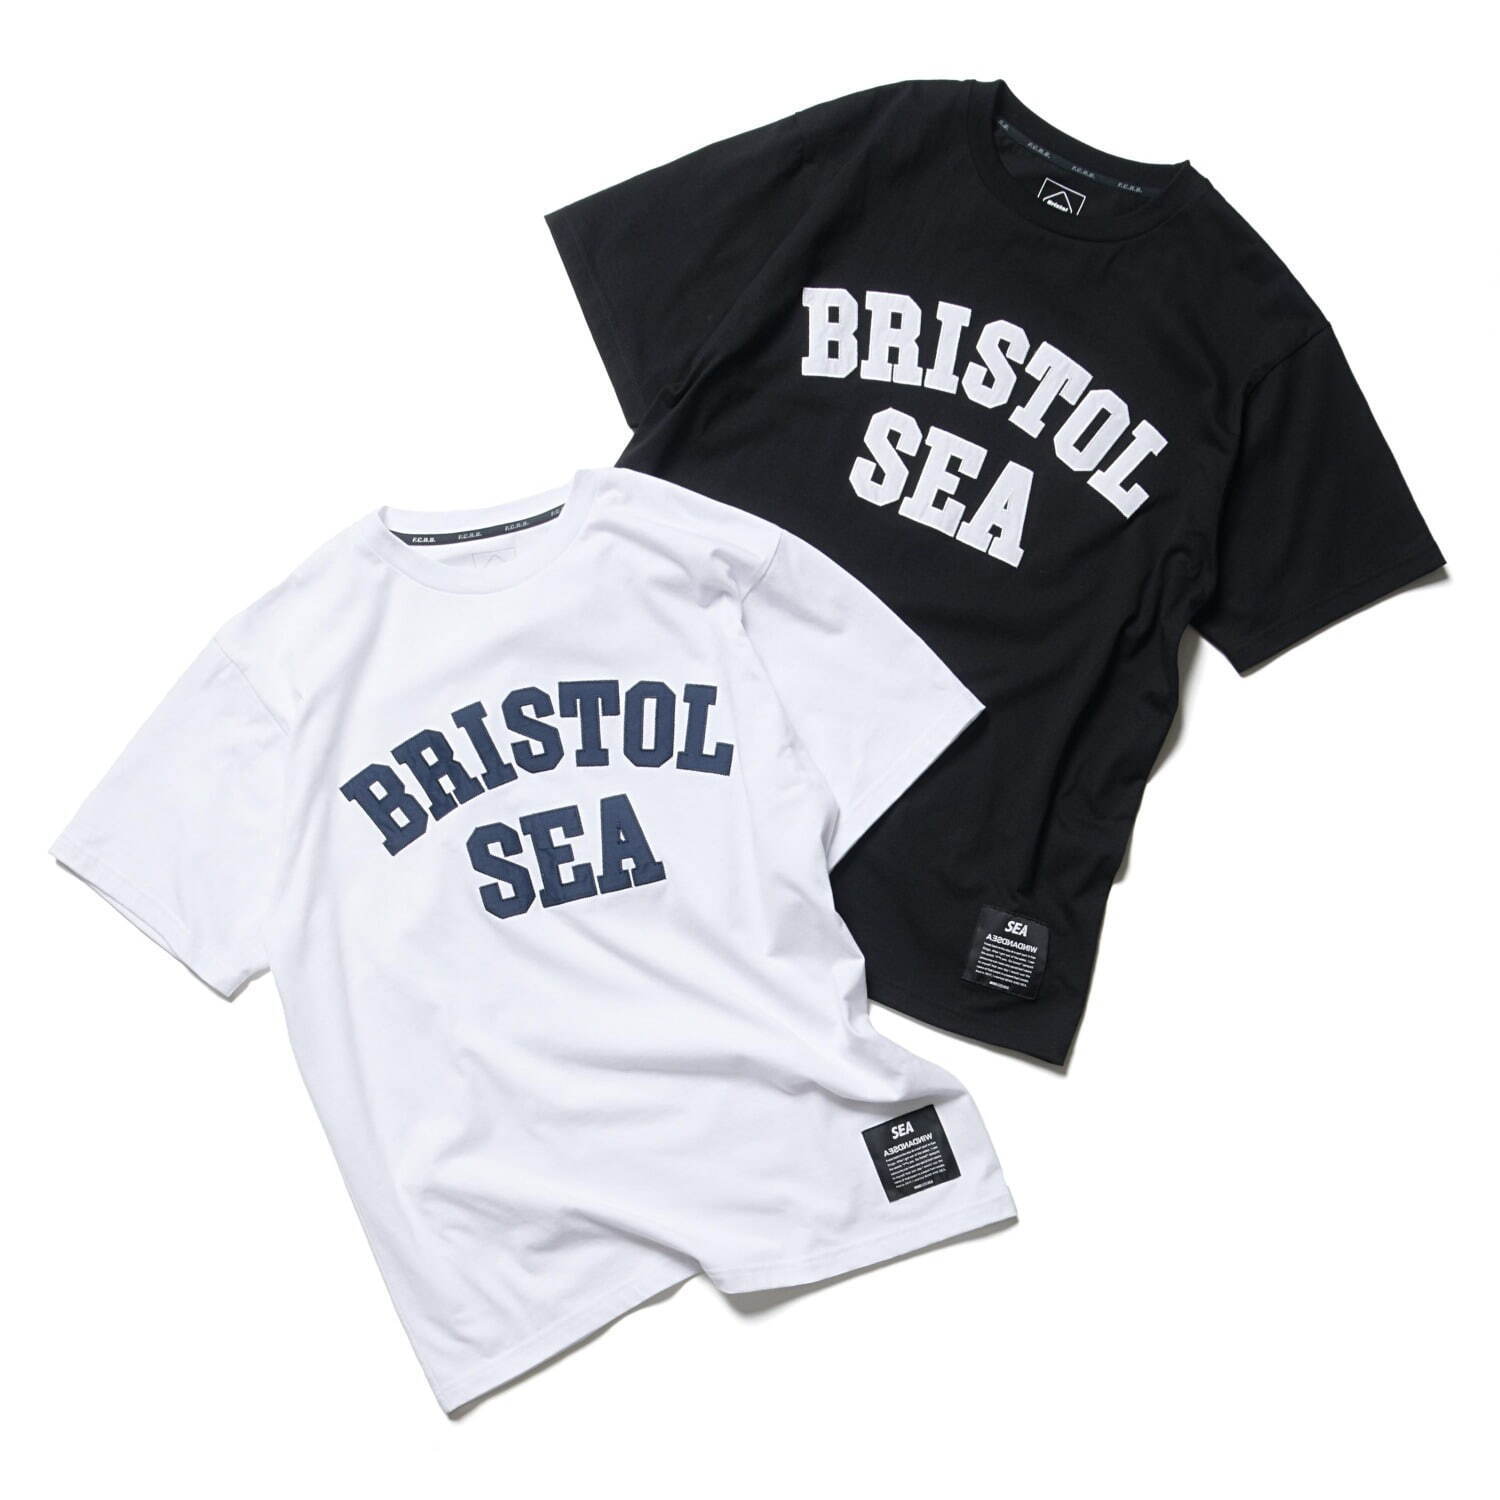 wind and sea & bristol Tシャツ